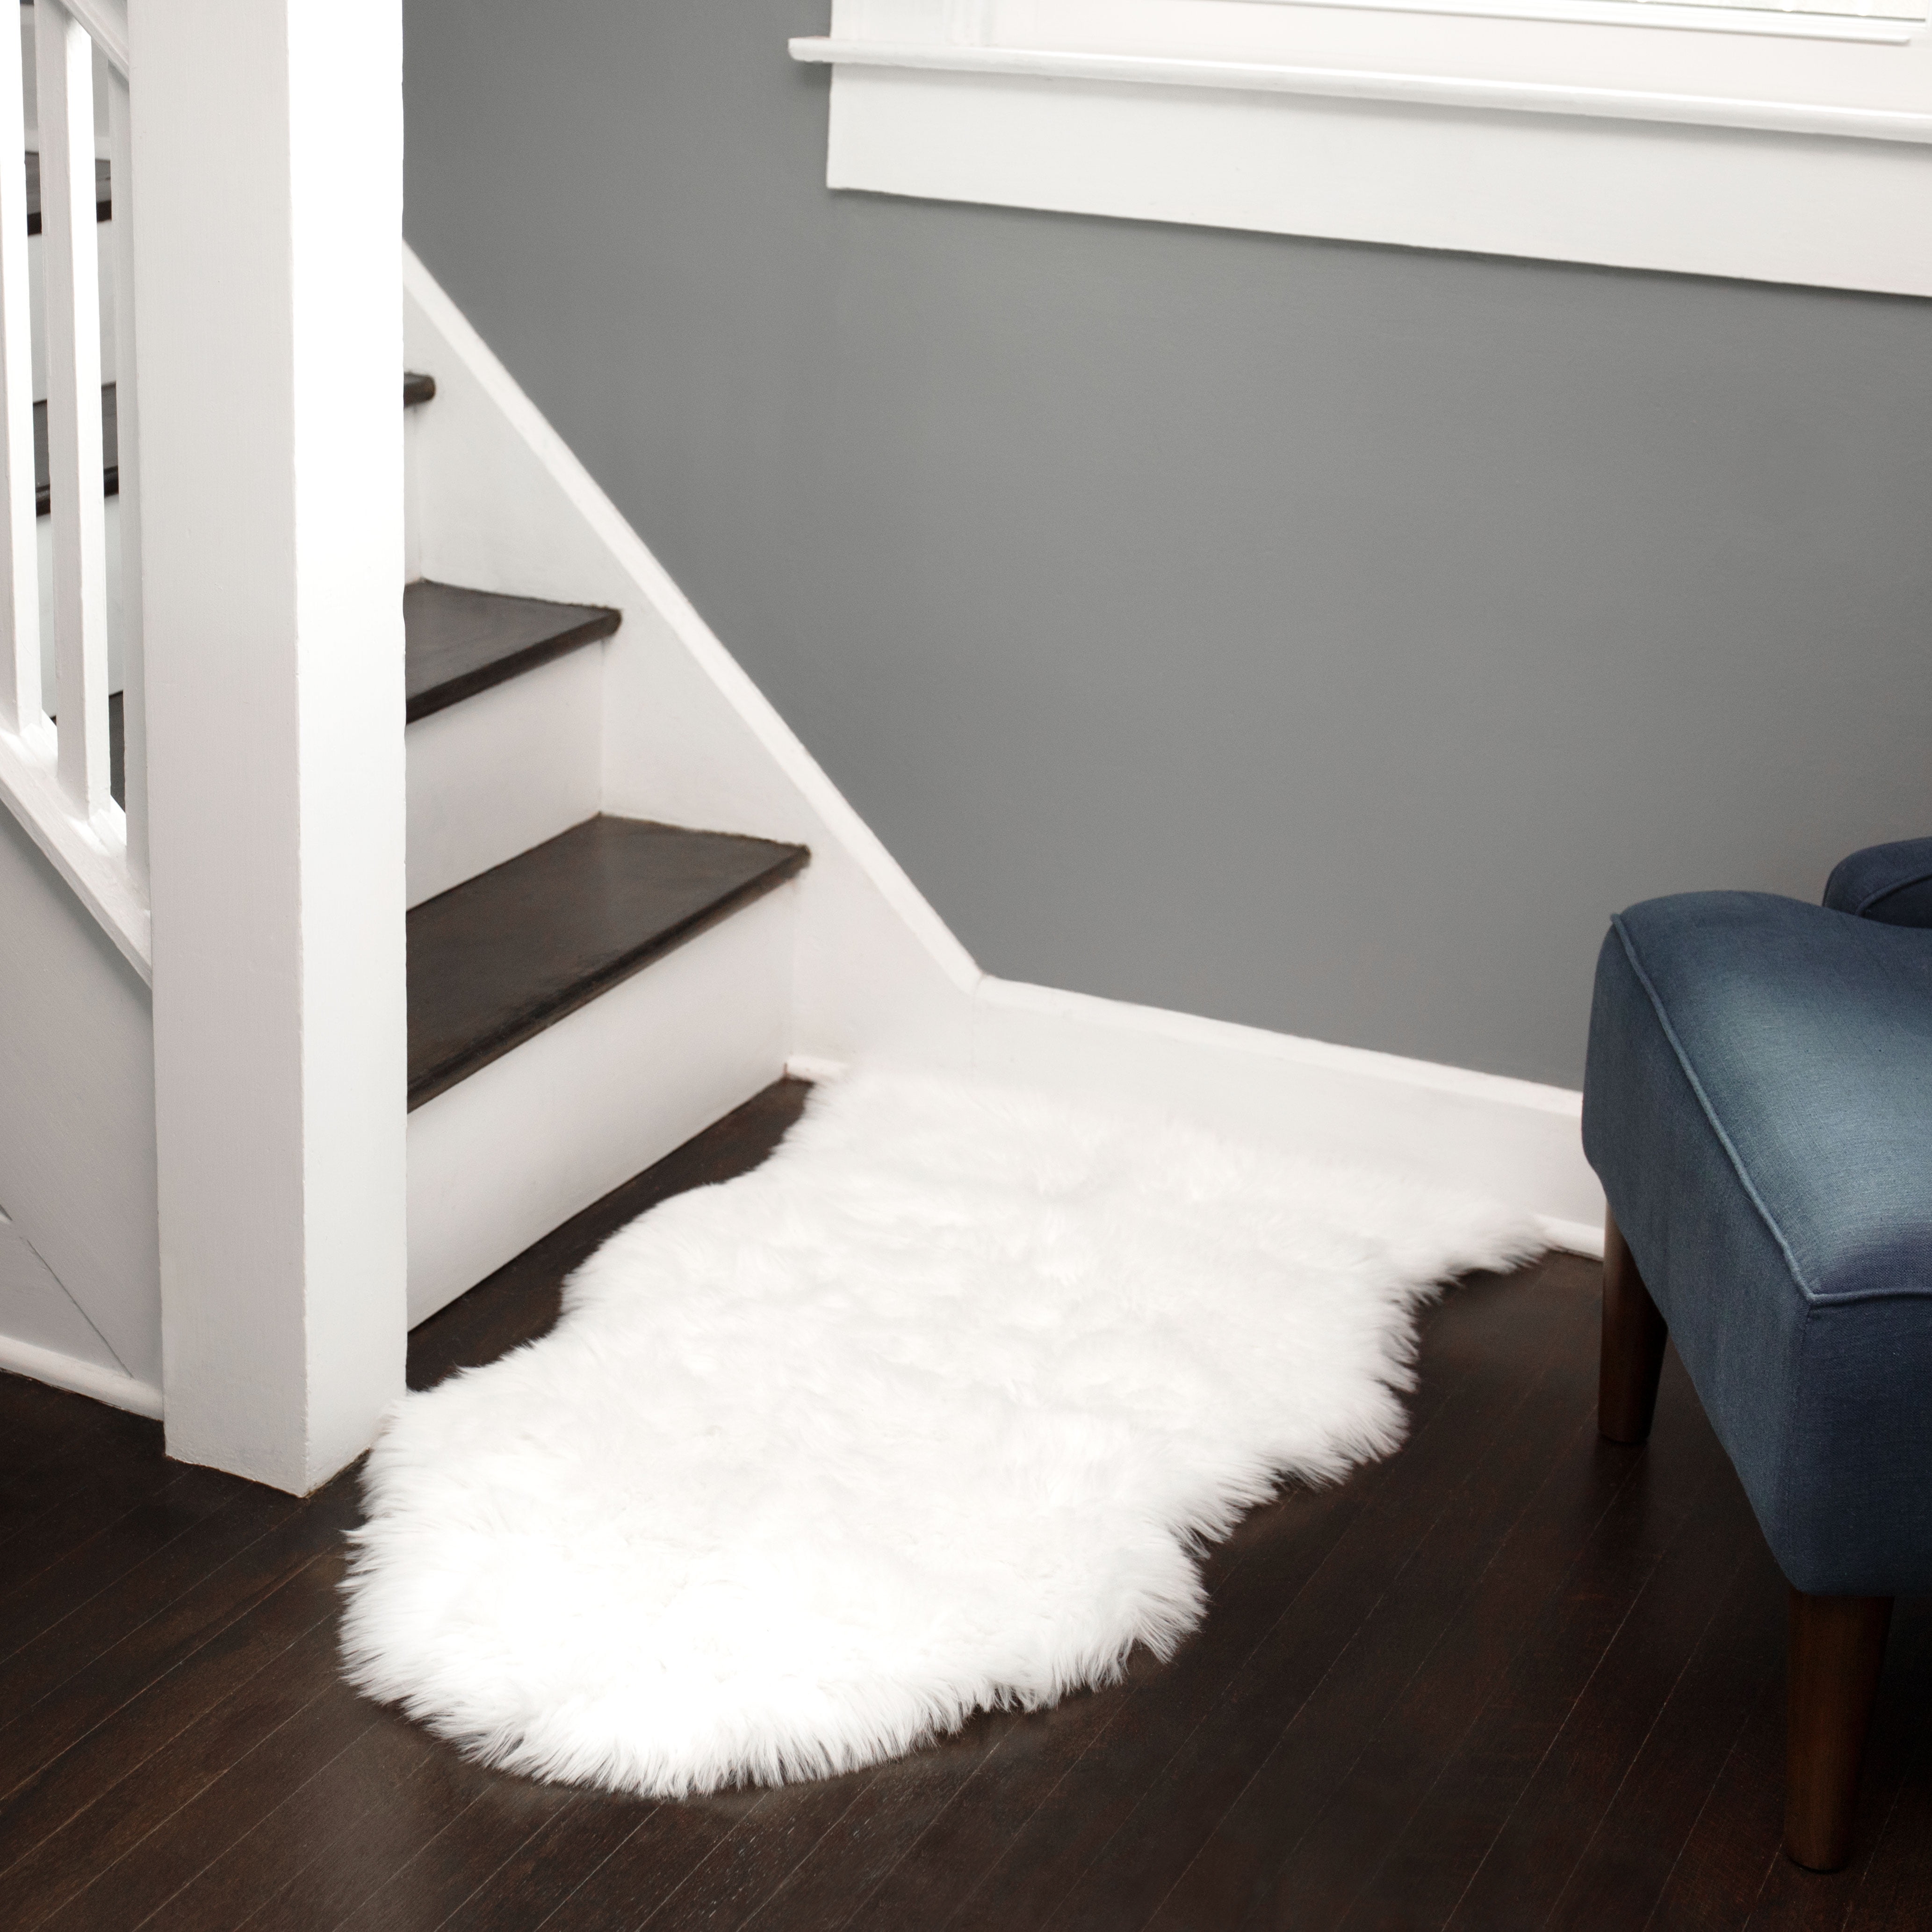 2x6 feet Faux Fur Rug 60x180cm Sheepskin Soft Fluffy Shaggy Plush Carpet Beige 